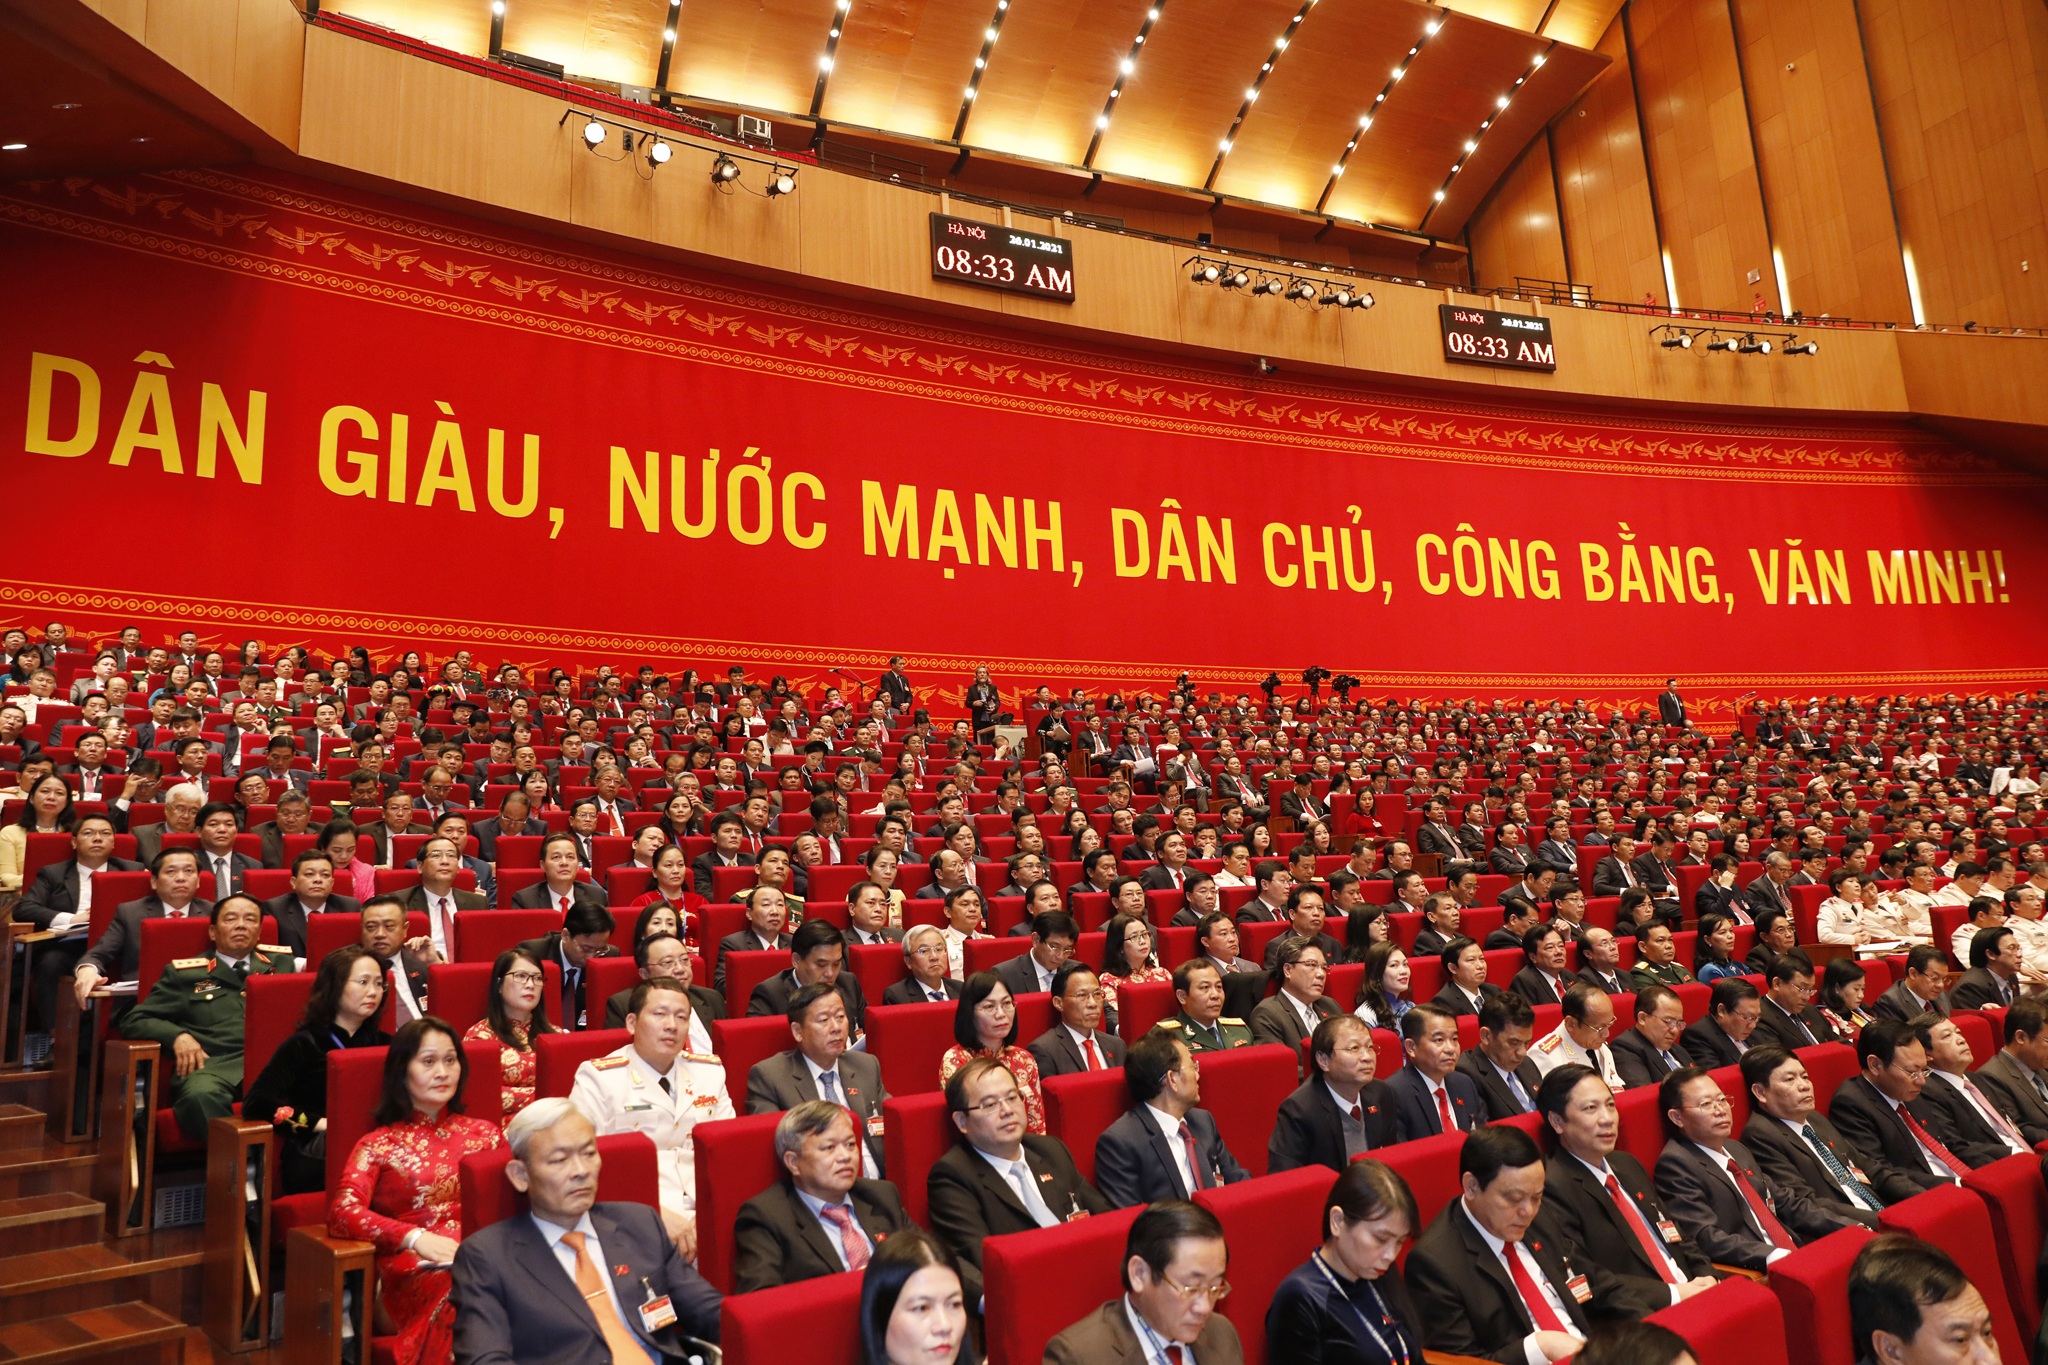 Toàn cảnh phiên khai mạc Đại hội Đại biểu toàn quốc lần thứ XIII của Đảng - 2